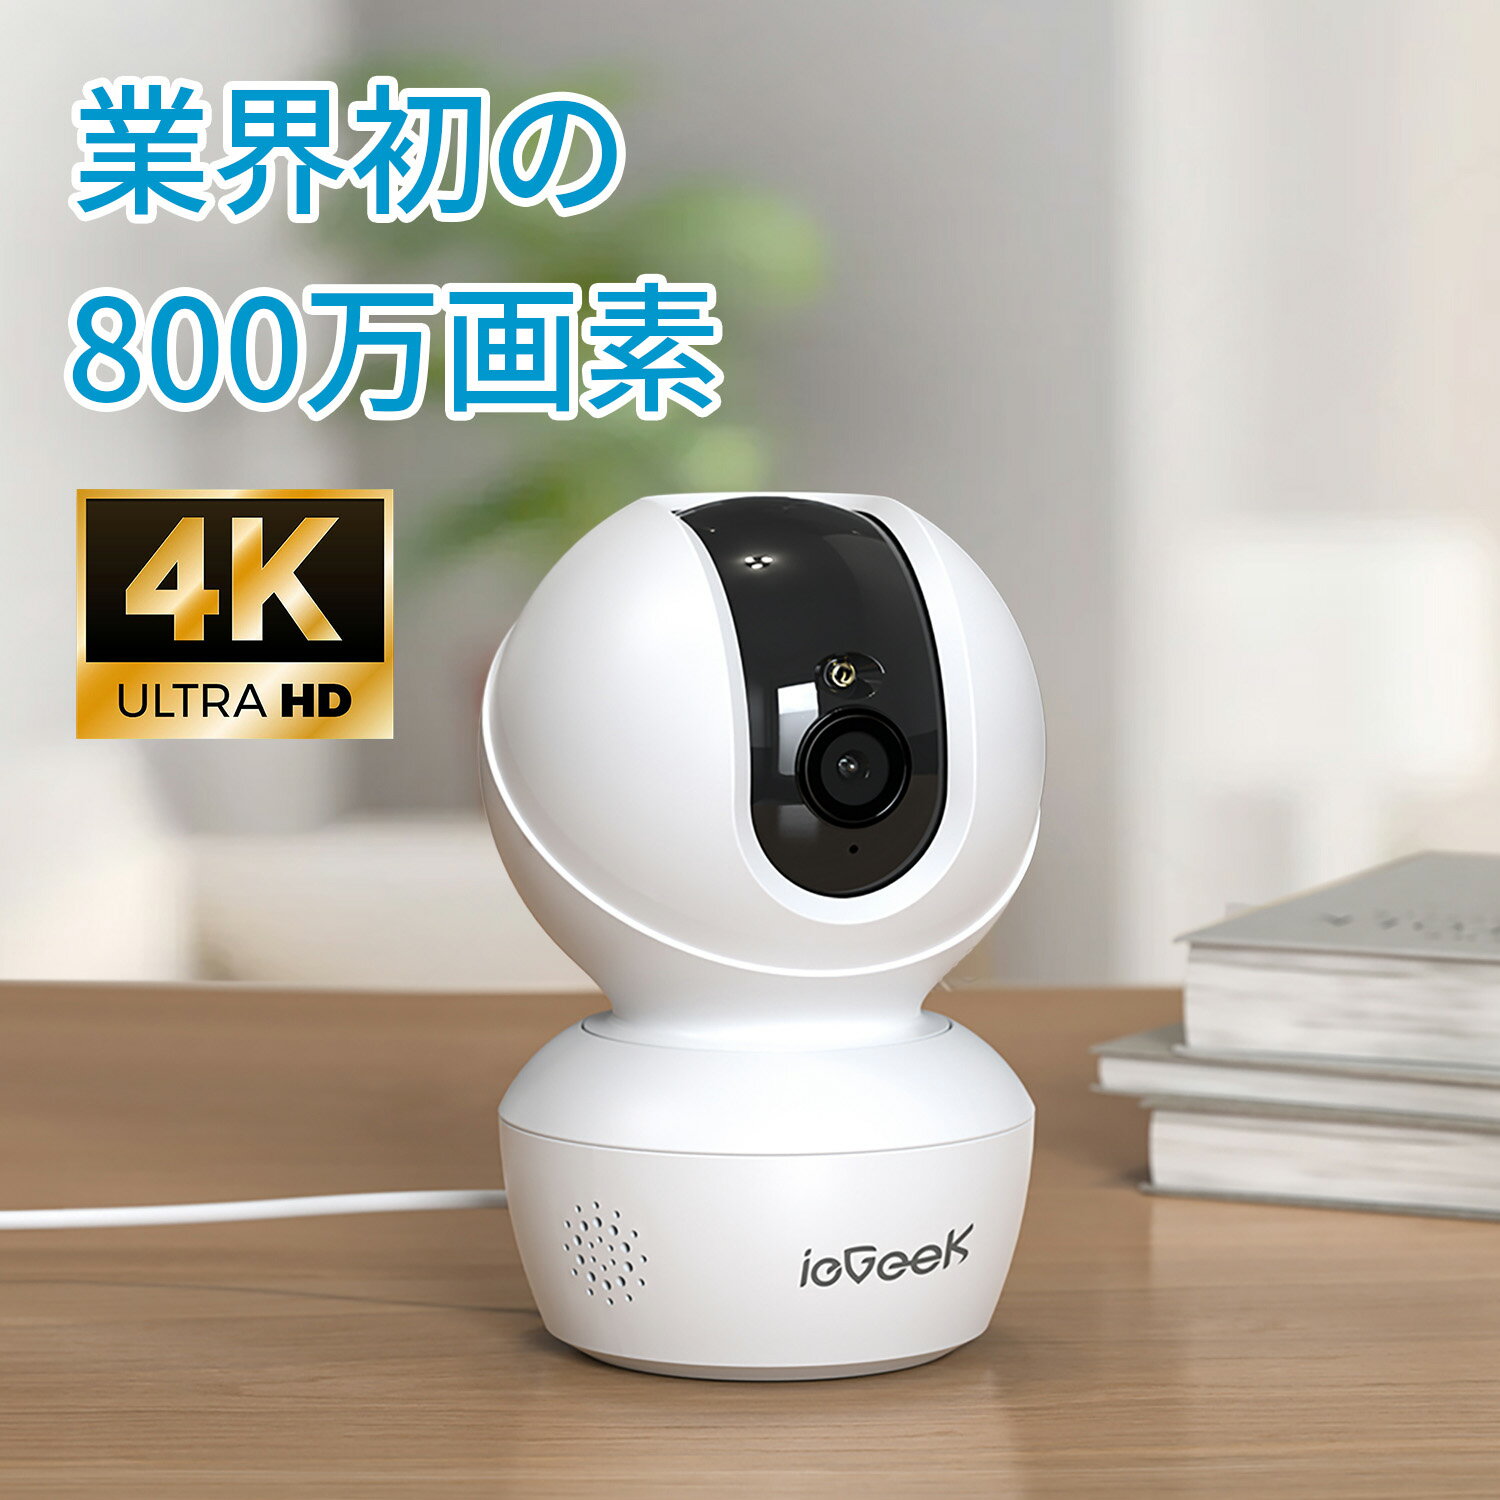 【最新5GHz Wi-Fi対応】ペットカメラ 8